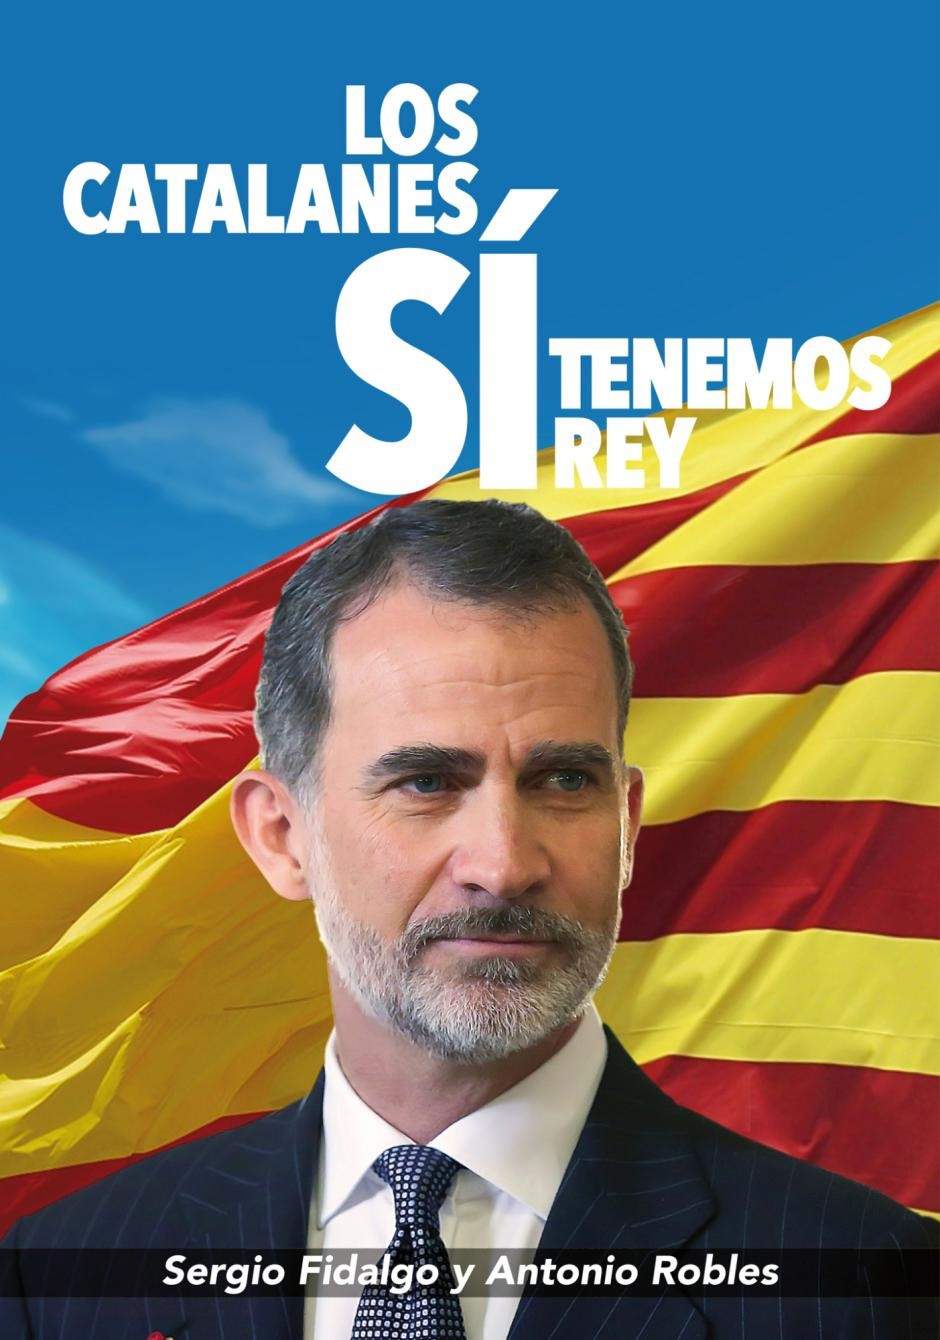 Políticos, juristas y profesores agradecen a Felipe VI en un libro su discurso el 3-O: 'Los catalanes sí tenemos rey'